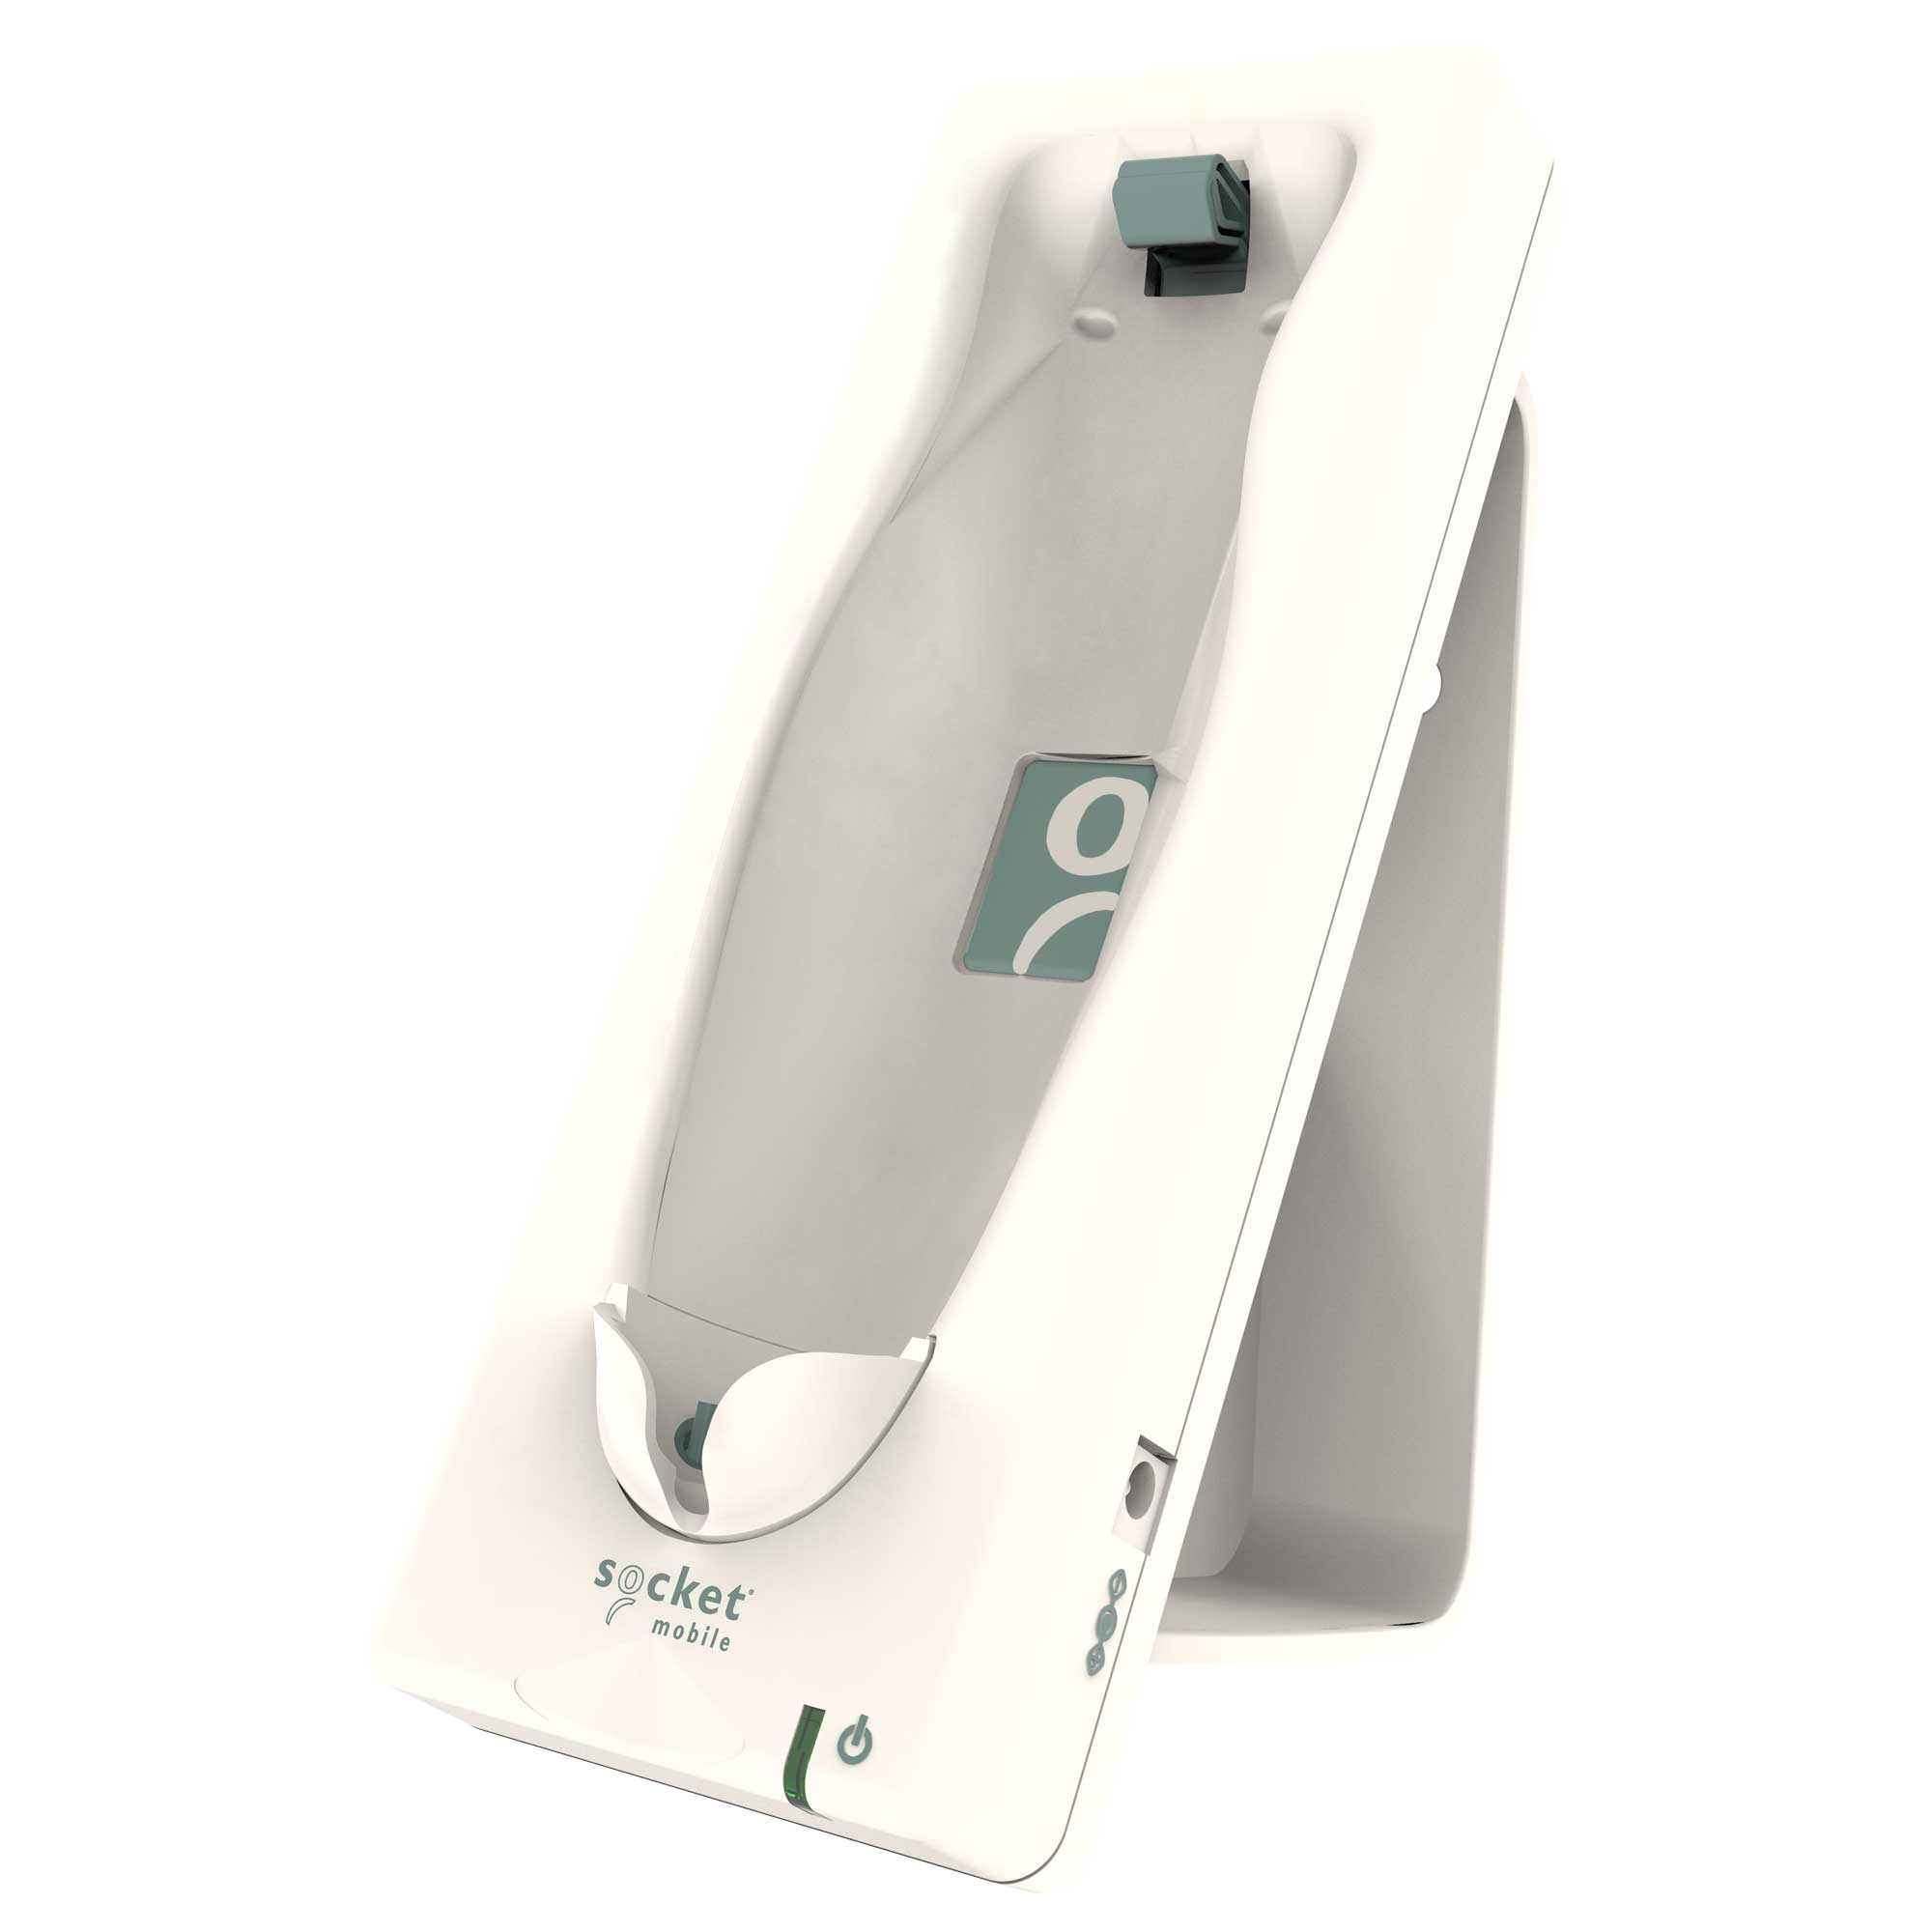 Charger DuraScan D745/D755 Healthcare – Socket Mobile